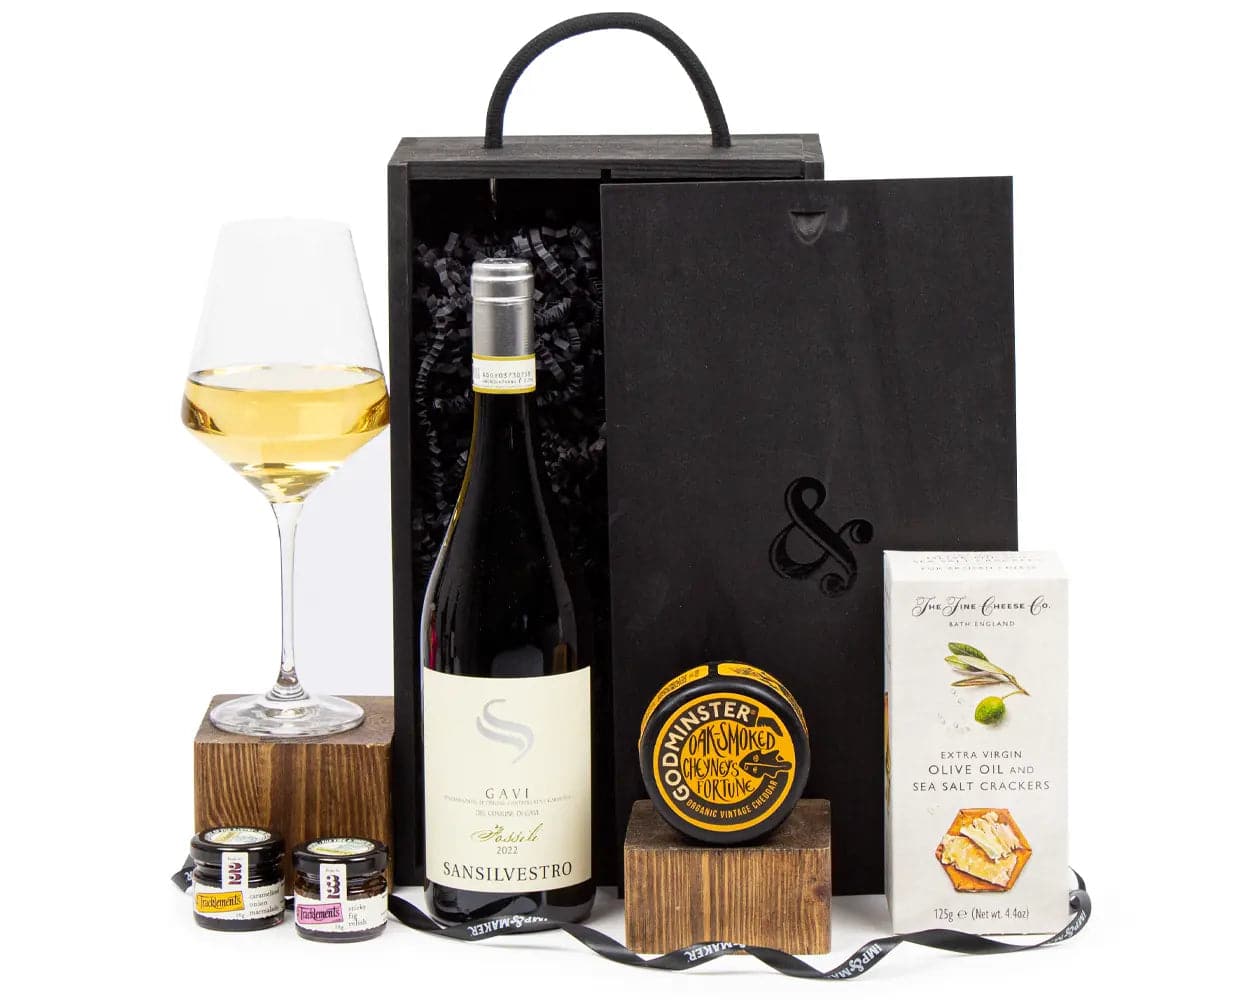 White Wine Cheese & Chutney Gift Box - IMP & MAKER